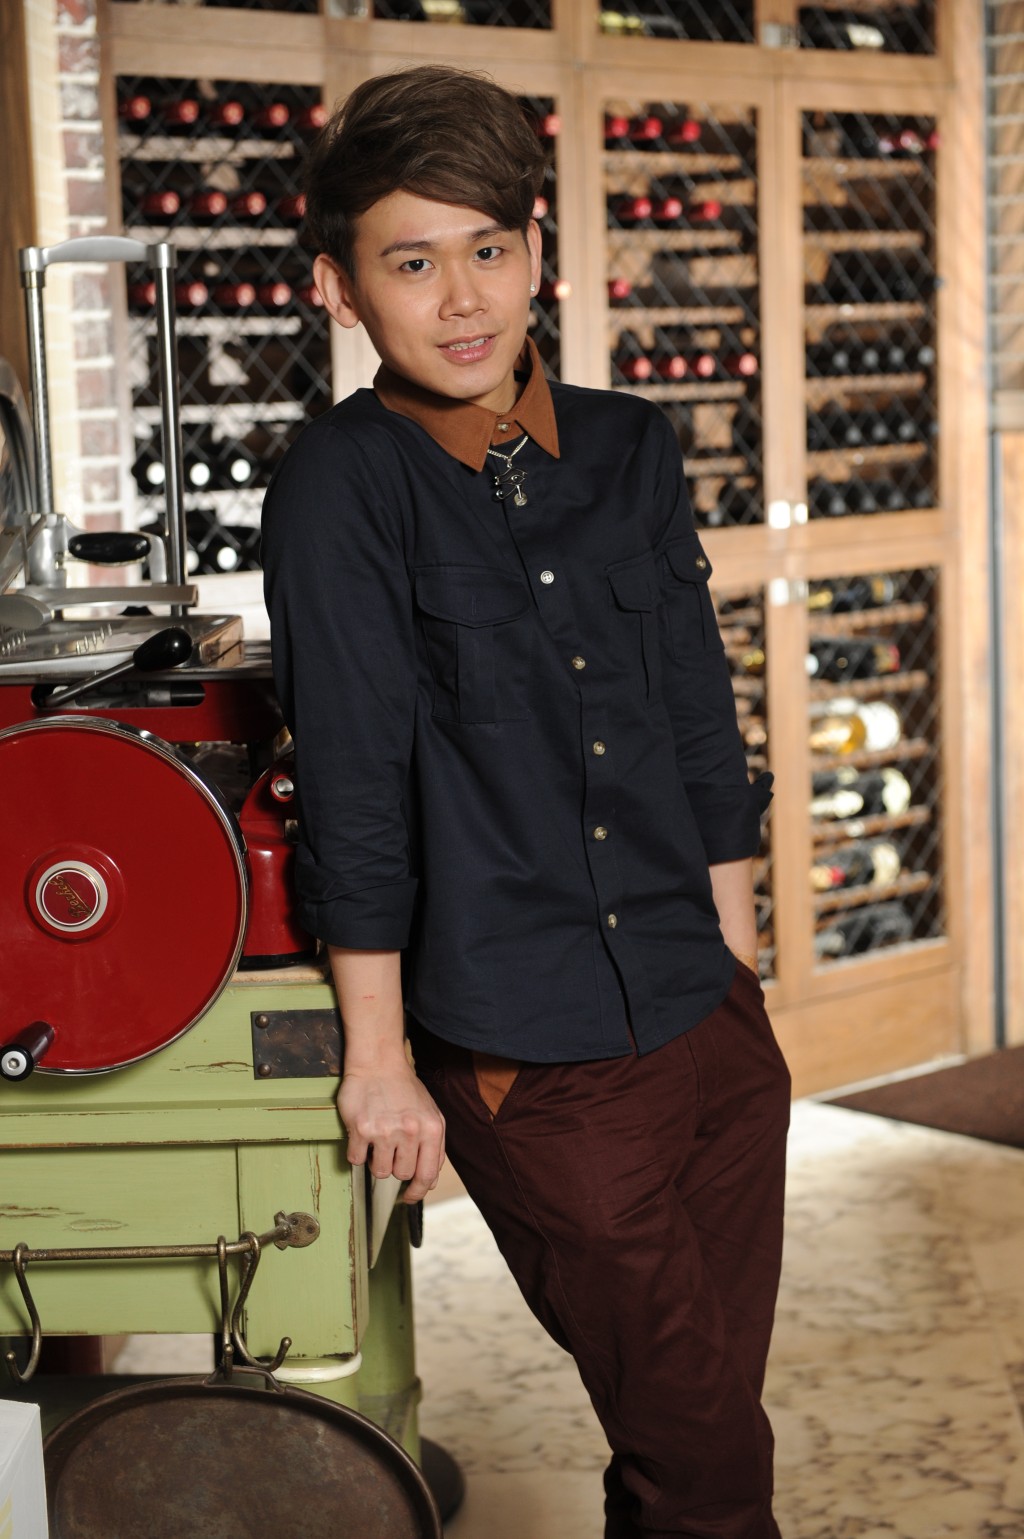 曹震豪近年與ViuTV節目《全民造星2》10強參賽者丘凱雄創立藝人管理公司FEAR Music Ltd。